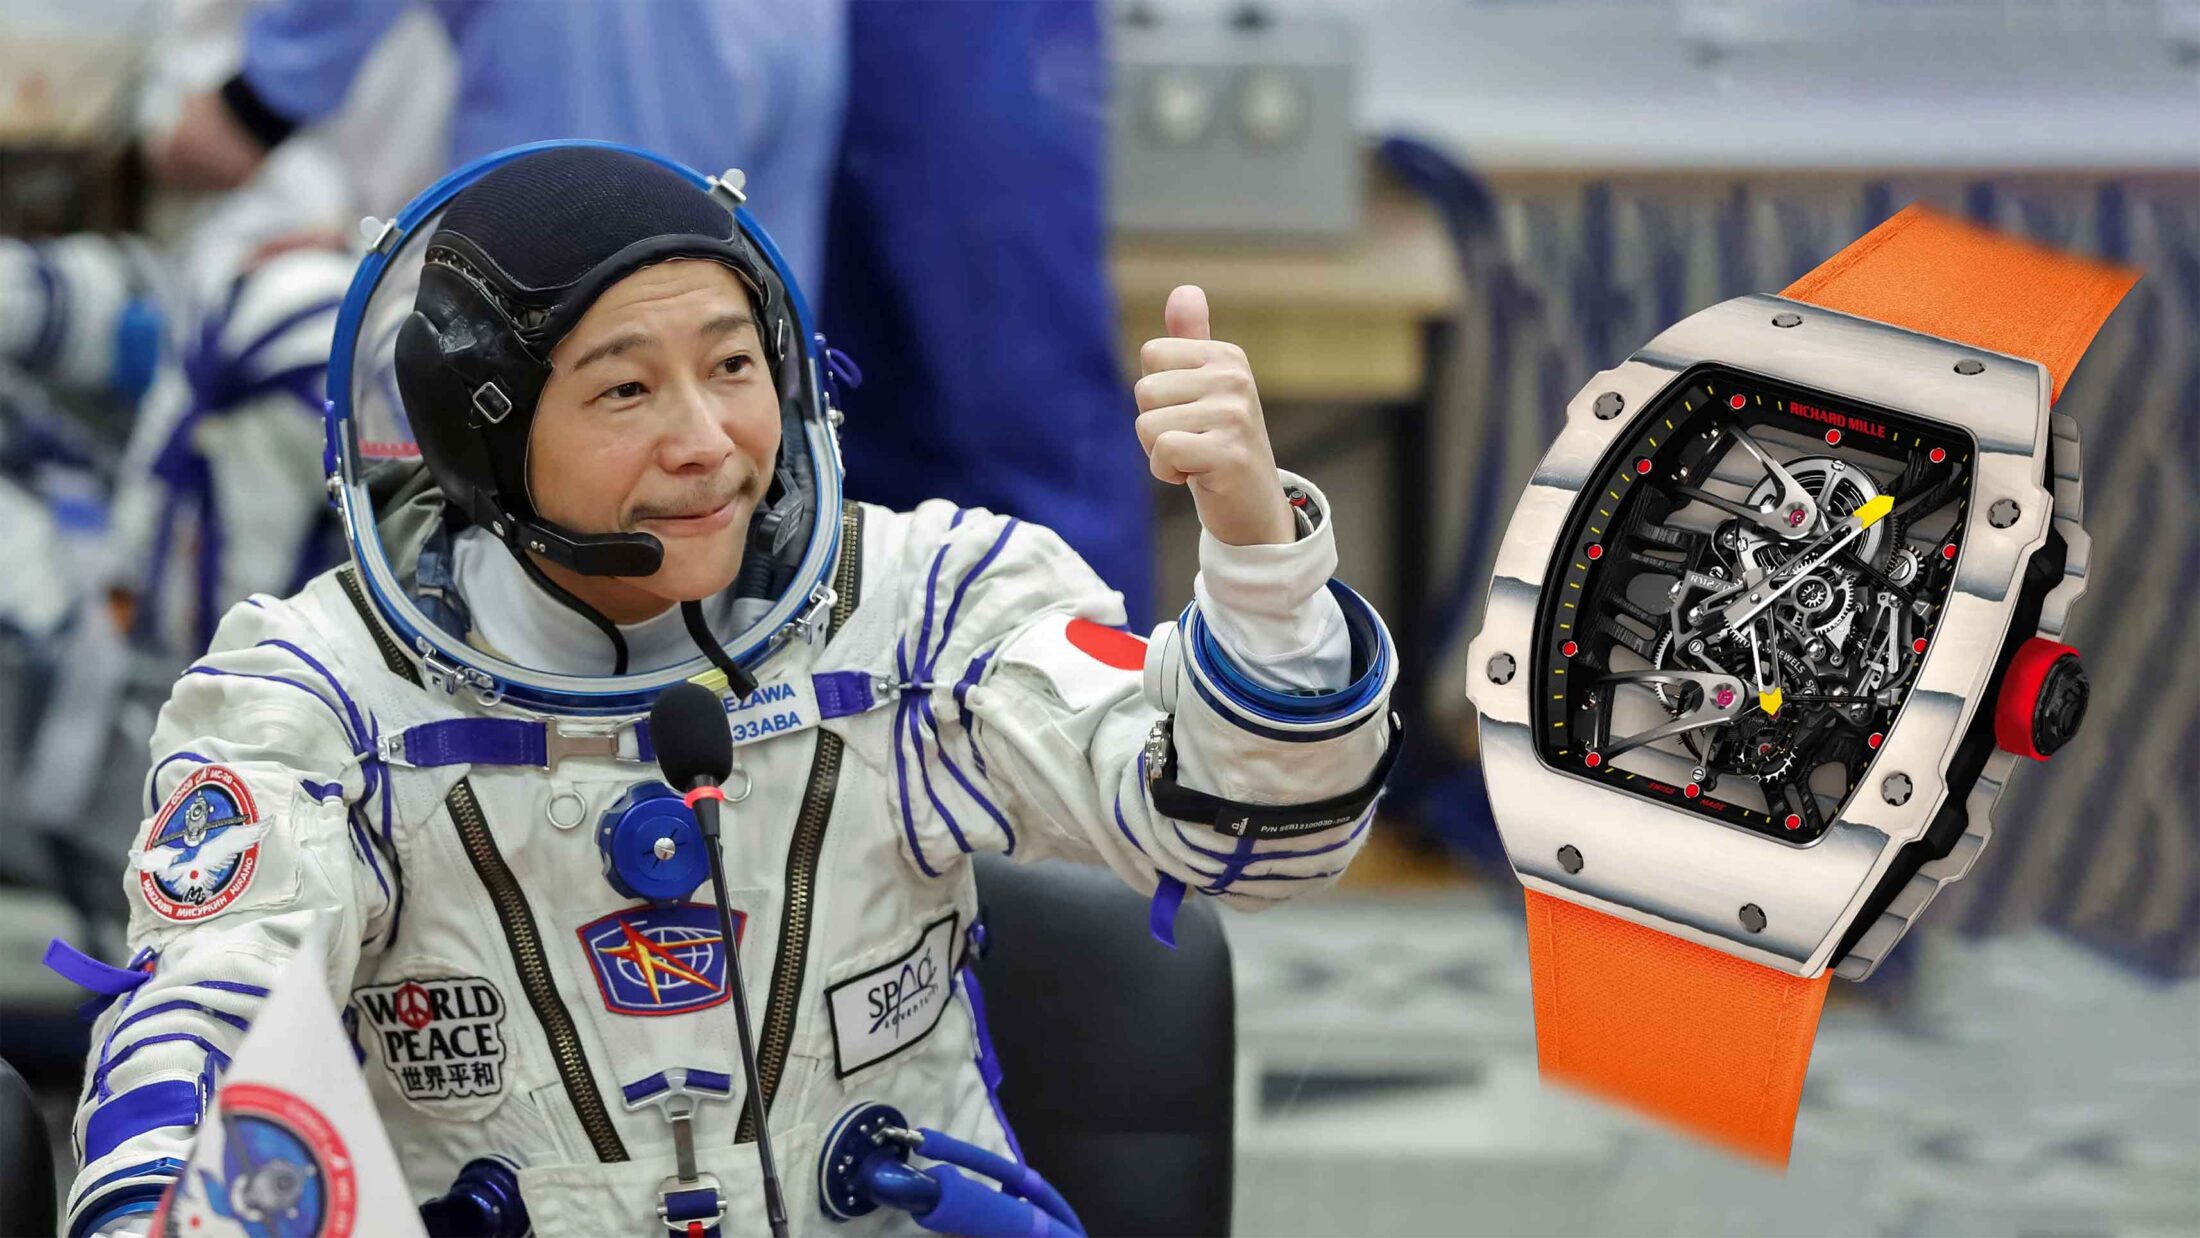 Đồng hồ Richard Mille RM 27-02 đồng hành cùng tỉ phú Nhật Bản Maezawa bay vào vũ trụ 